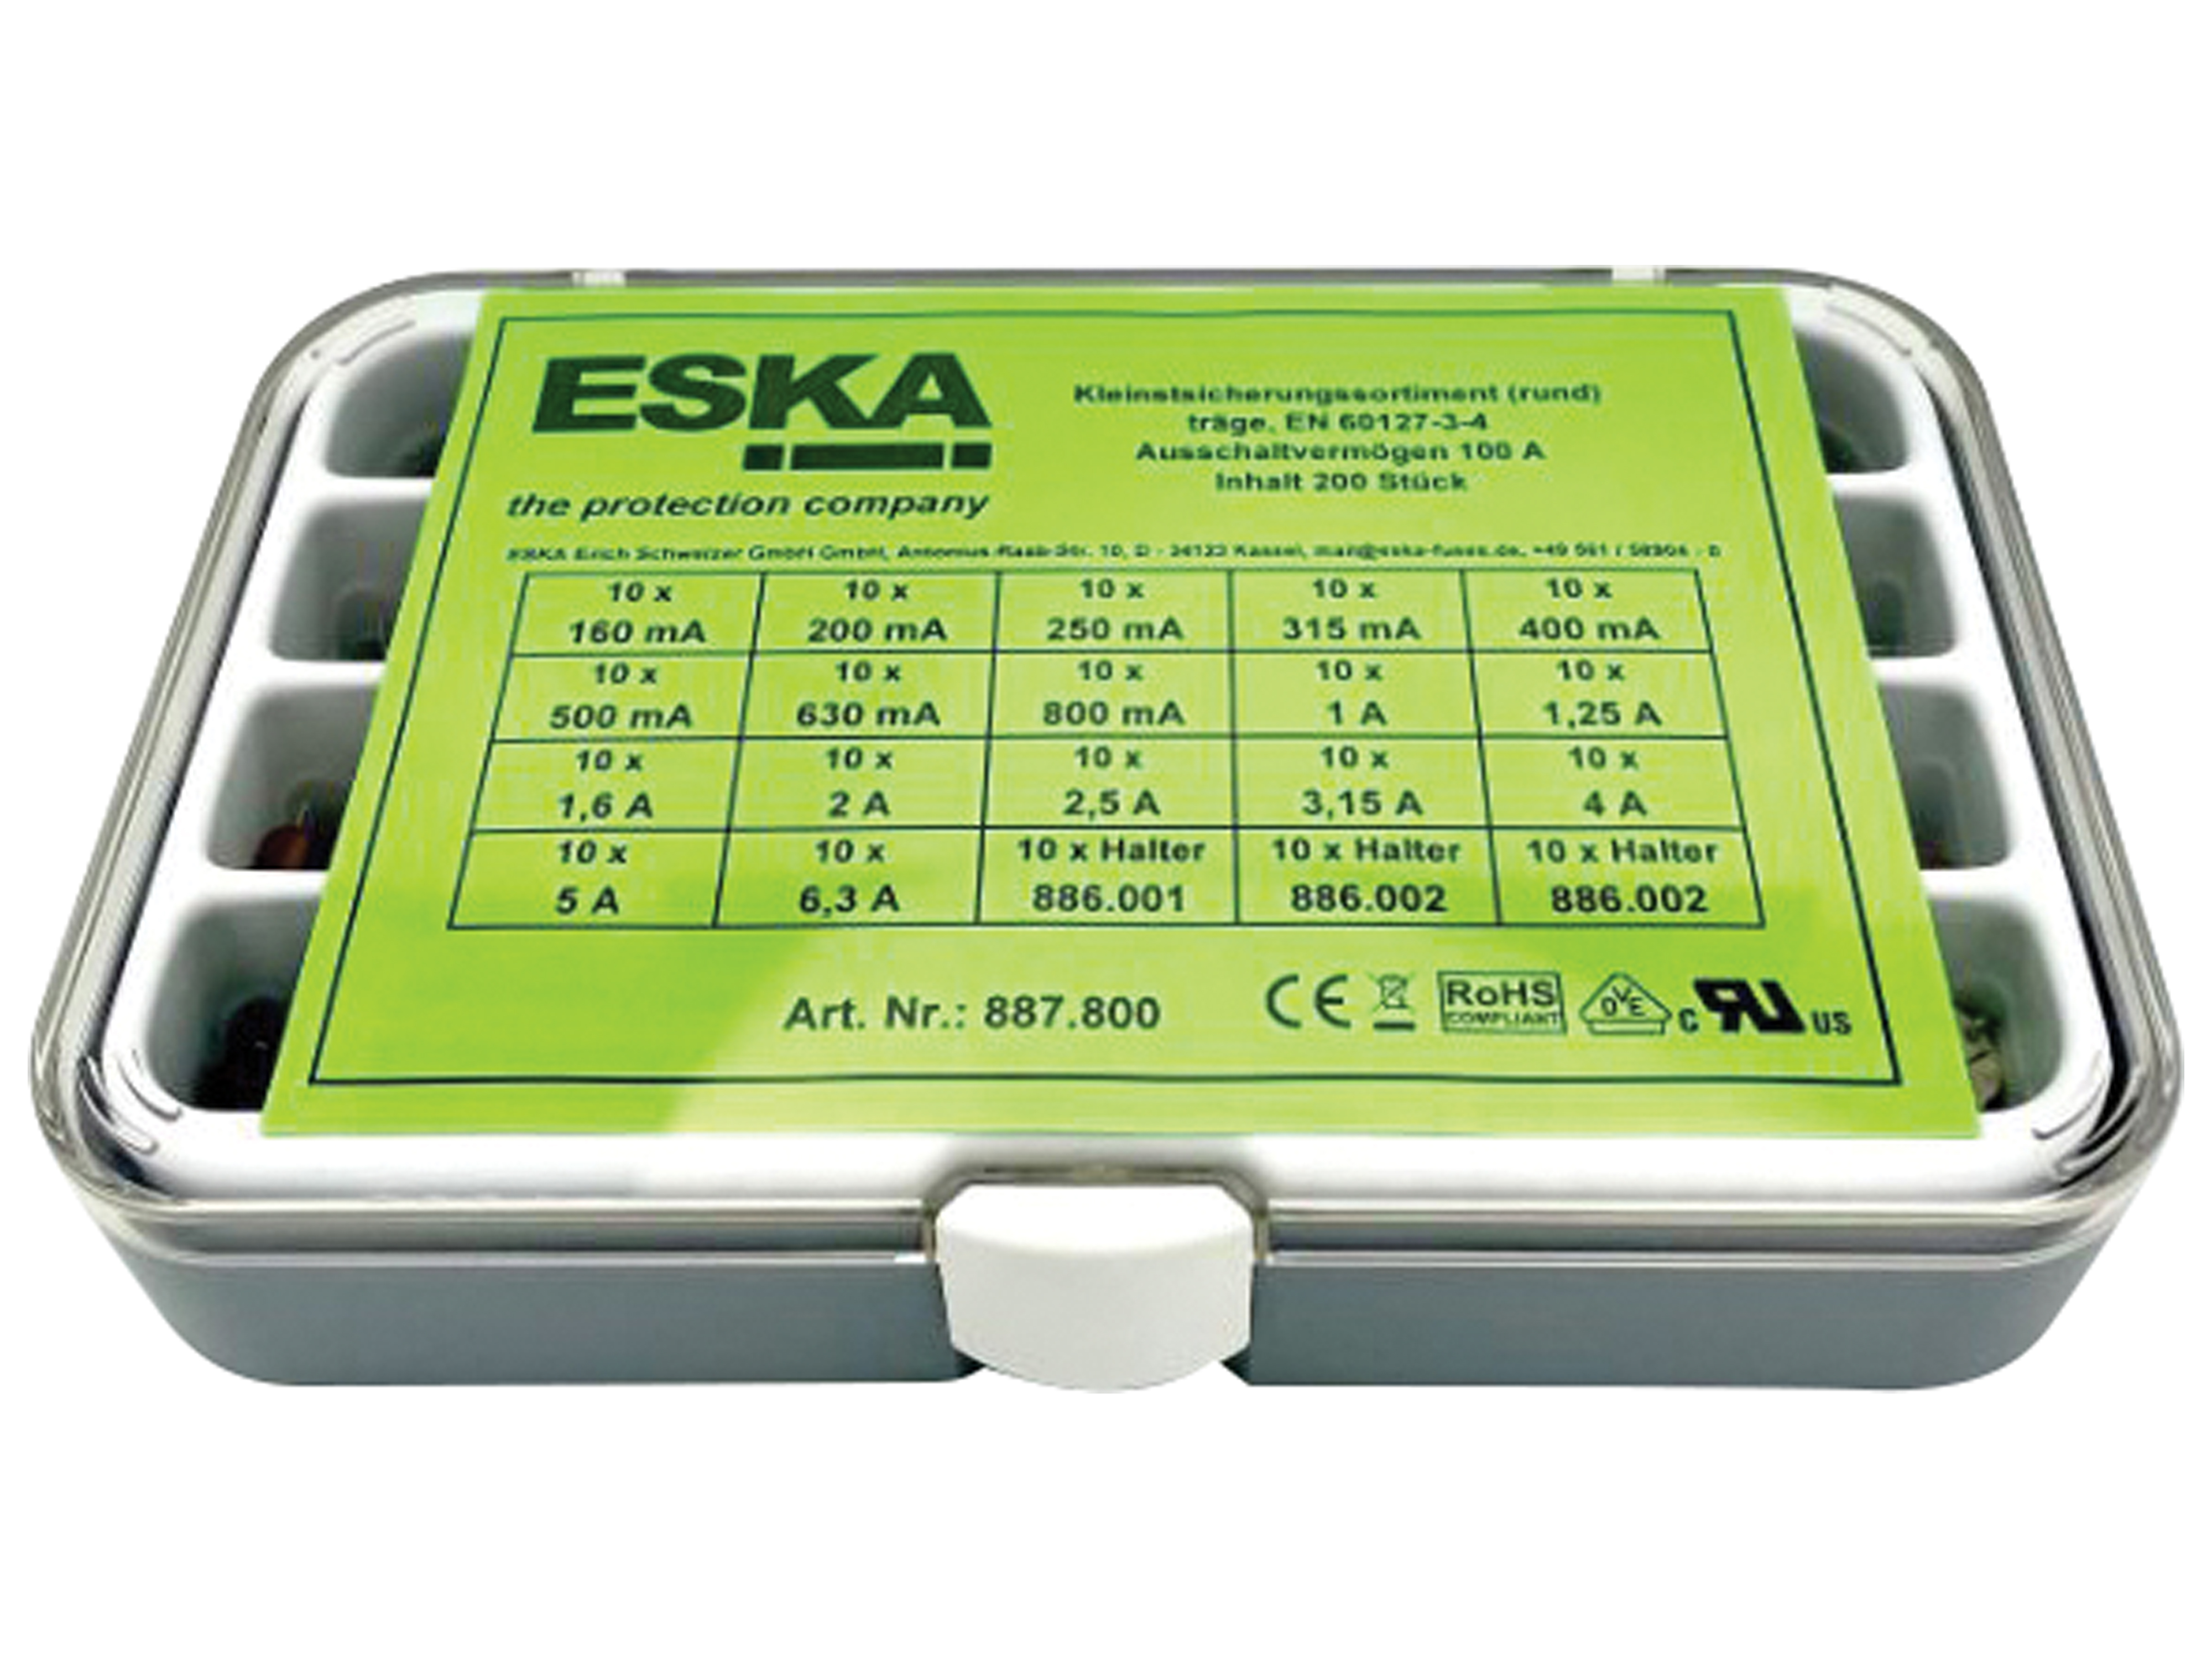 ESKA Kleinstsicherung-Set 887800, 160mA-6,3A, 250VAC, rund